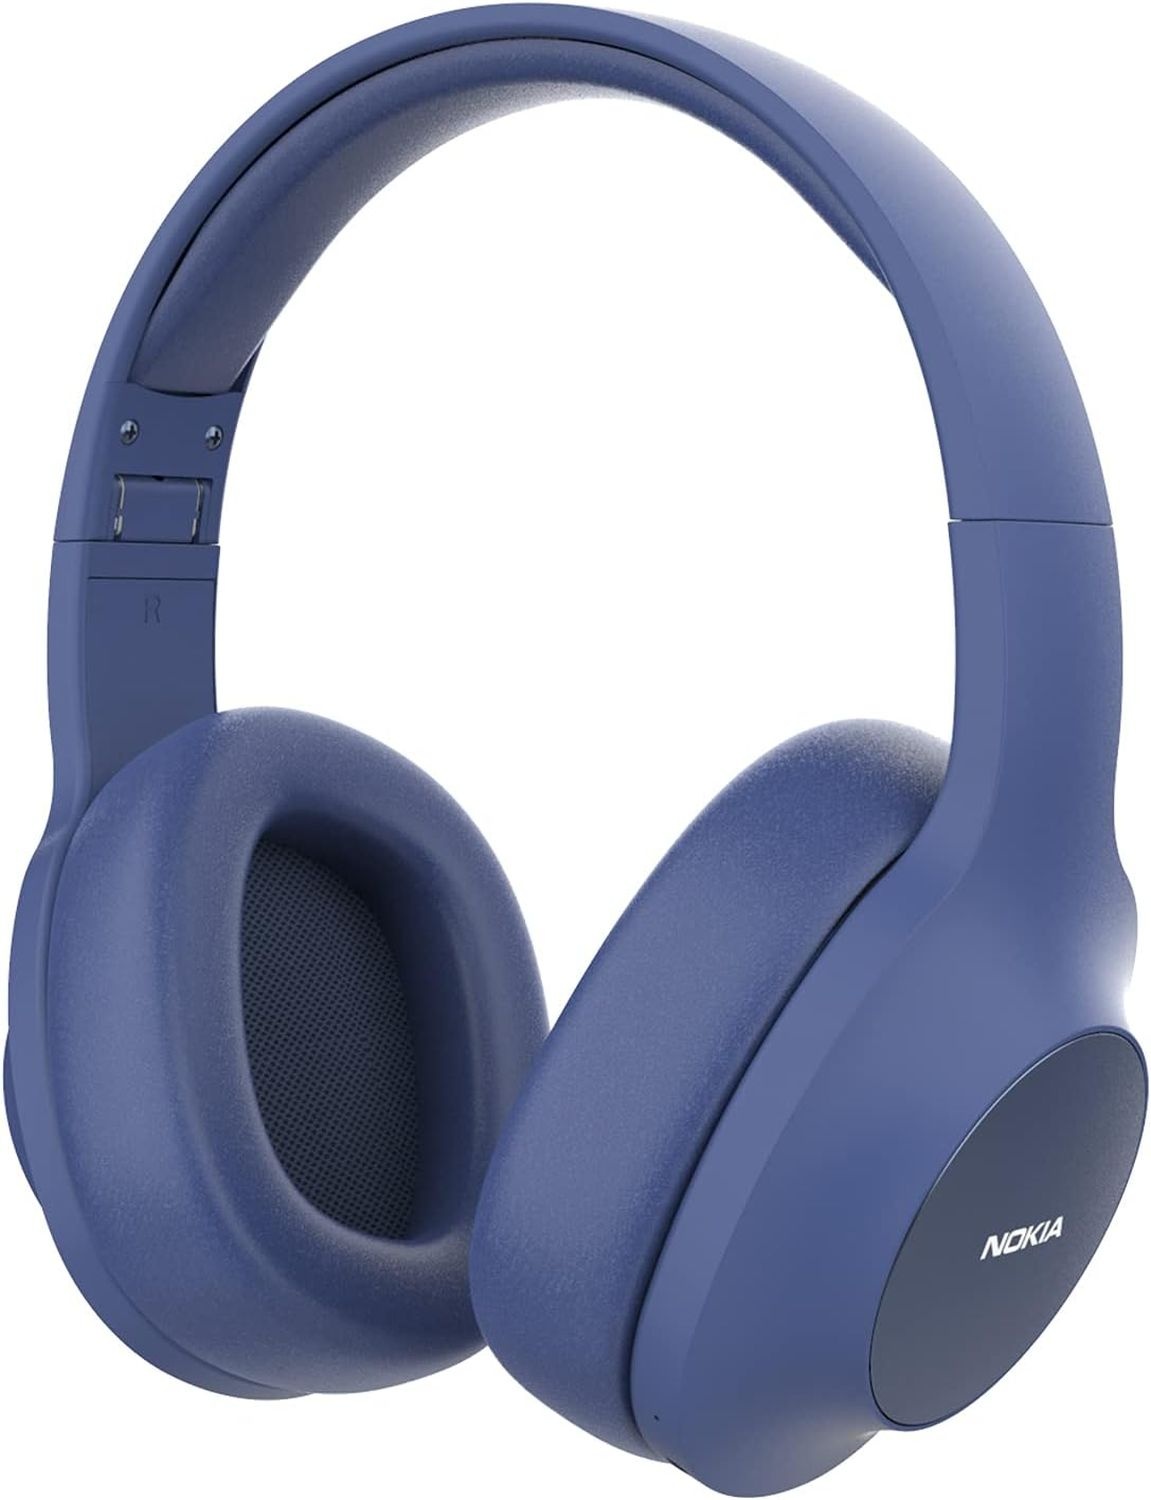 Nokia E-1200 Essential Wireless Kopfhörer, Over-Ear Kopfhörer mit Faltbarem Kopfbügel, Bluetooth 5.0 Kompatibel, 40 Stunden Wireless Spielzeit, Blau